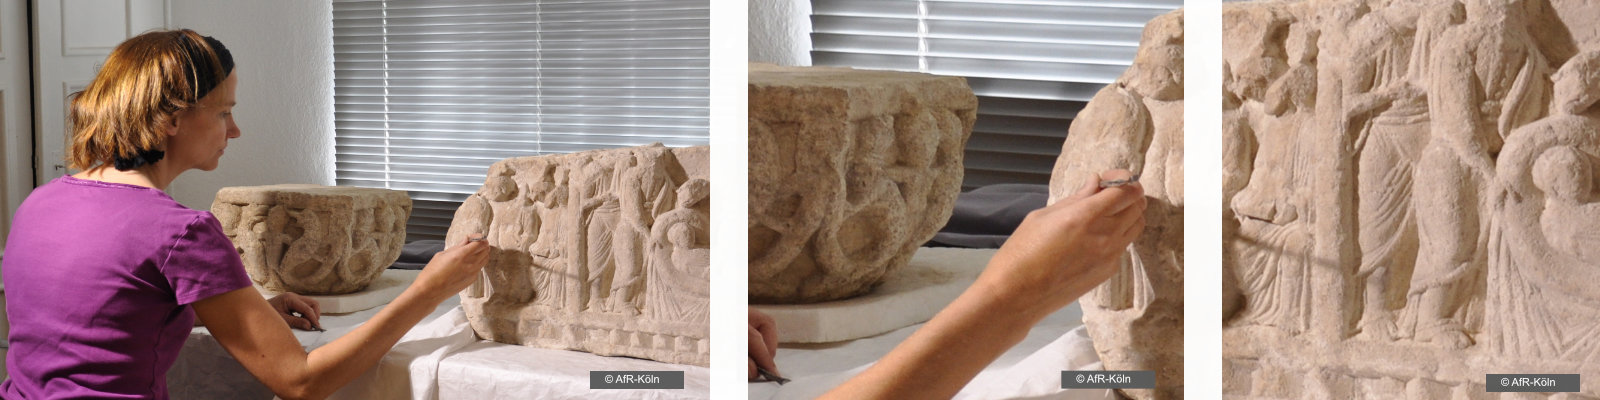 Das  Bild ist eine Collage: links sitzt Restauratorin/Frau halbgedreht, sie arbeitet an Relief aus hellem Stein. Rechts: vergrößerte Ausschnitte von Hand und Steinrelief.